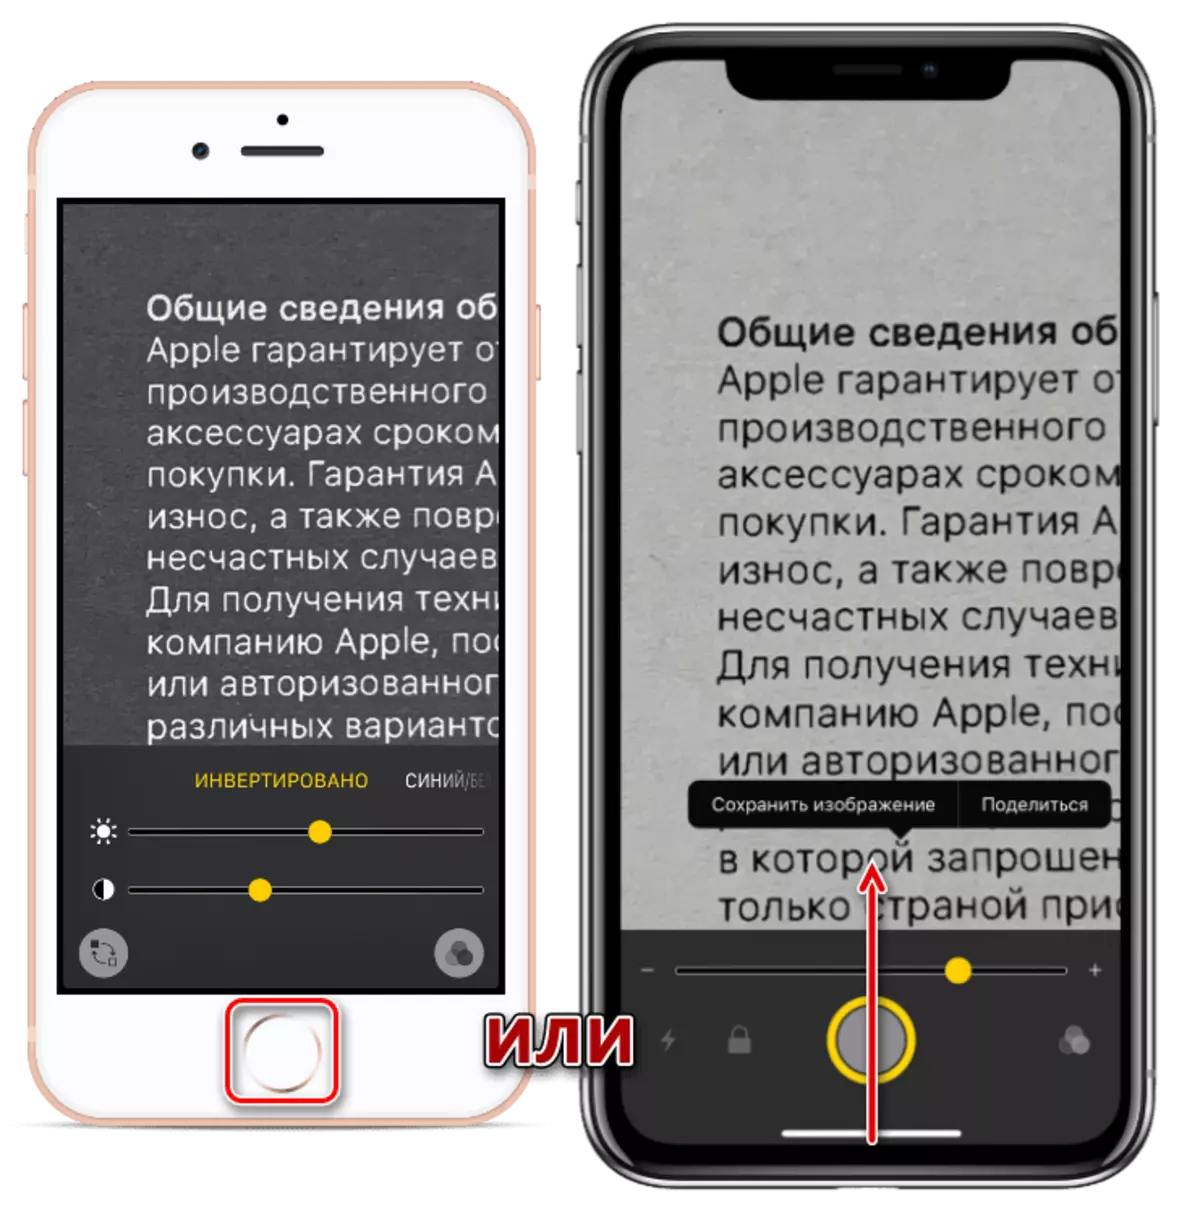 Έξοδος από την εφαρμογή μεγεθυντικού φακού σε διαφορετικά μοντέλα iPhone